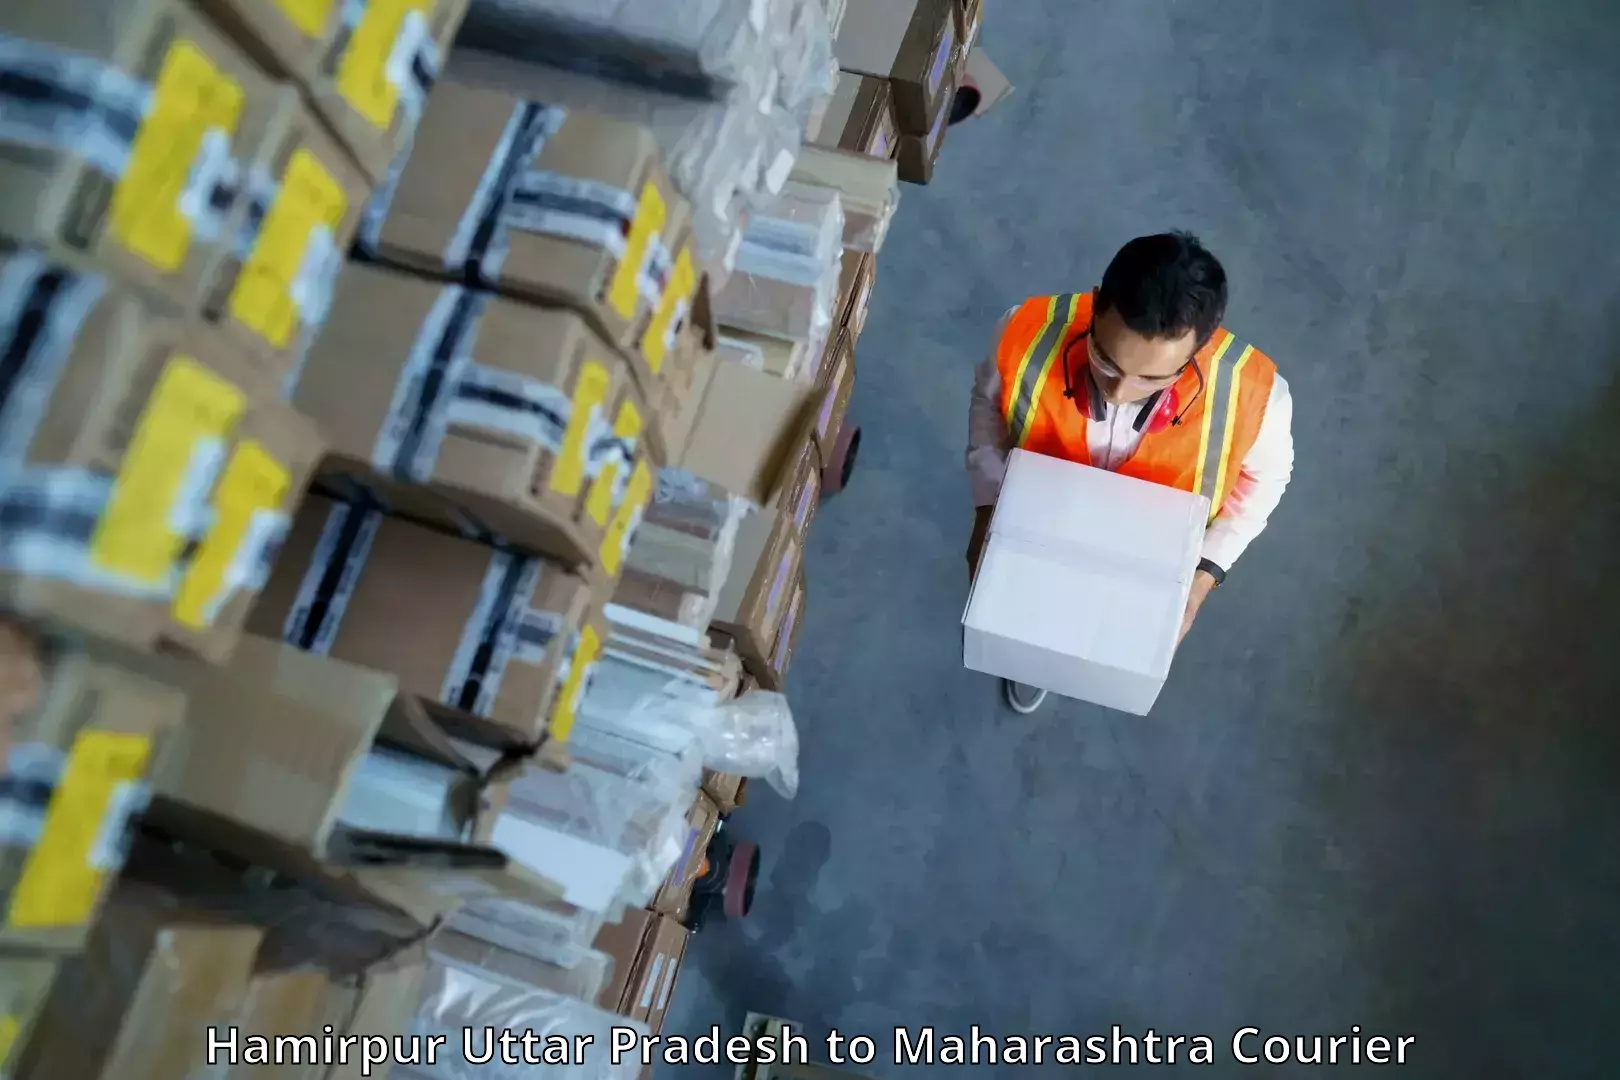 High-capacity parcel service Hamirpur Uttar Pradesh to Maharashtra